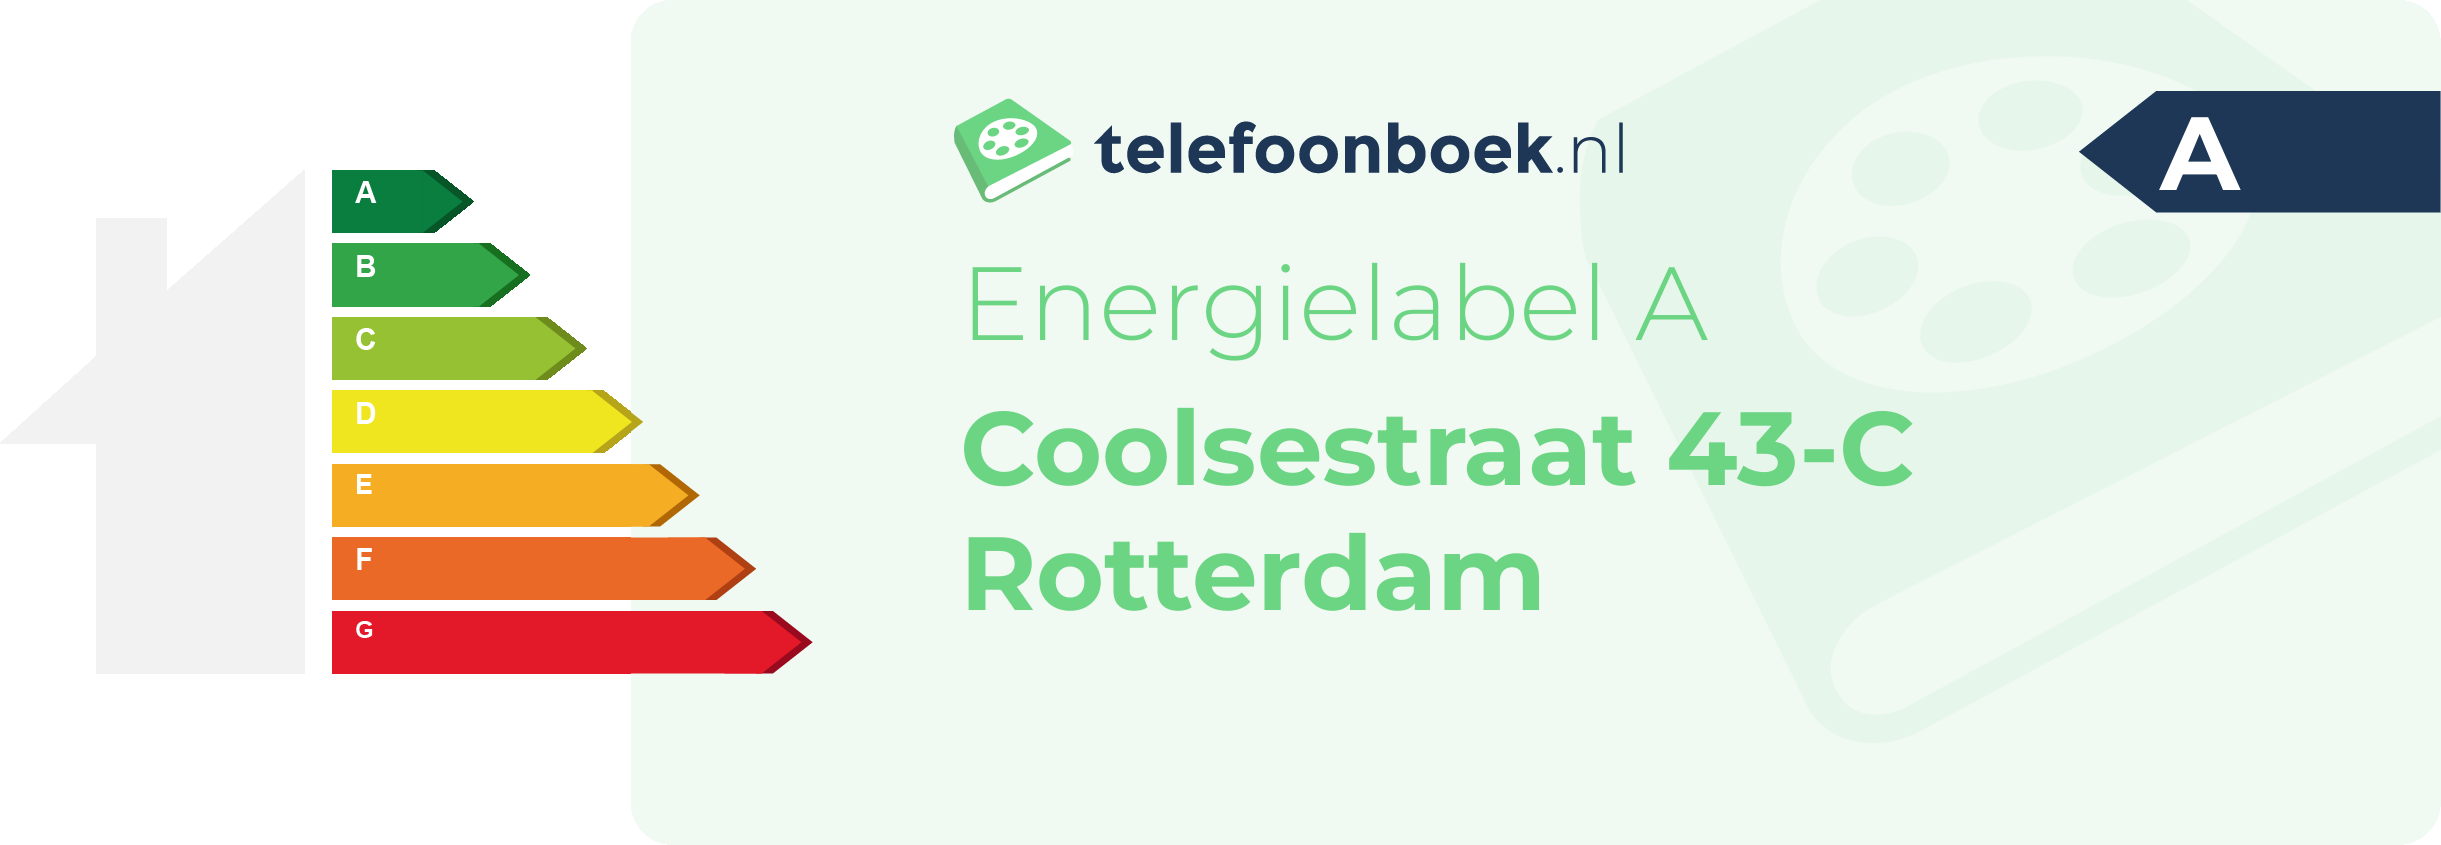 Energielabel Coolsestraat 43-C Rotterdam